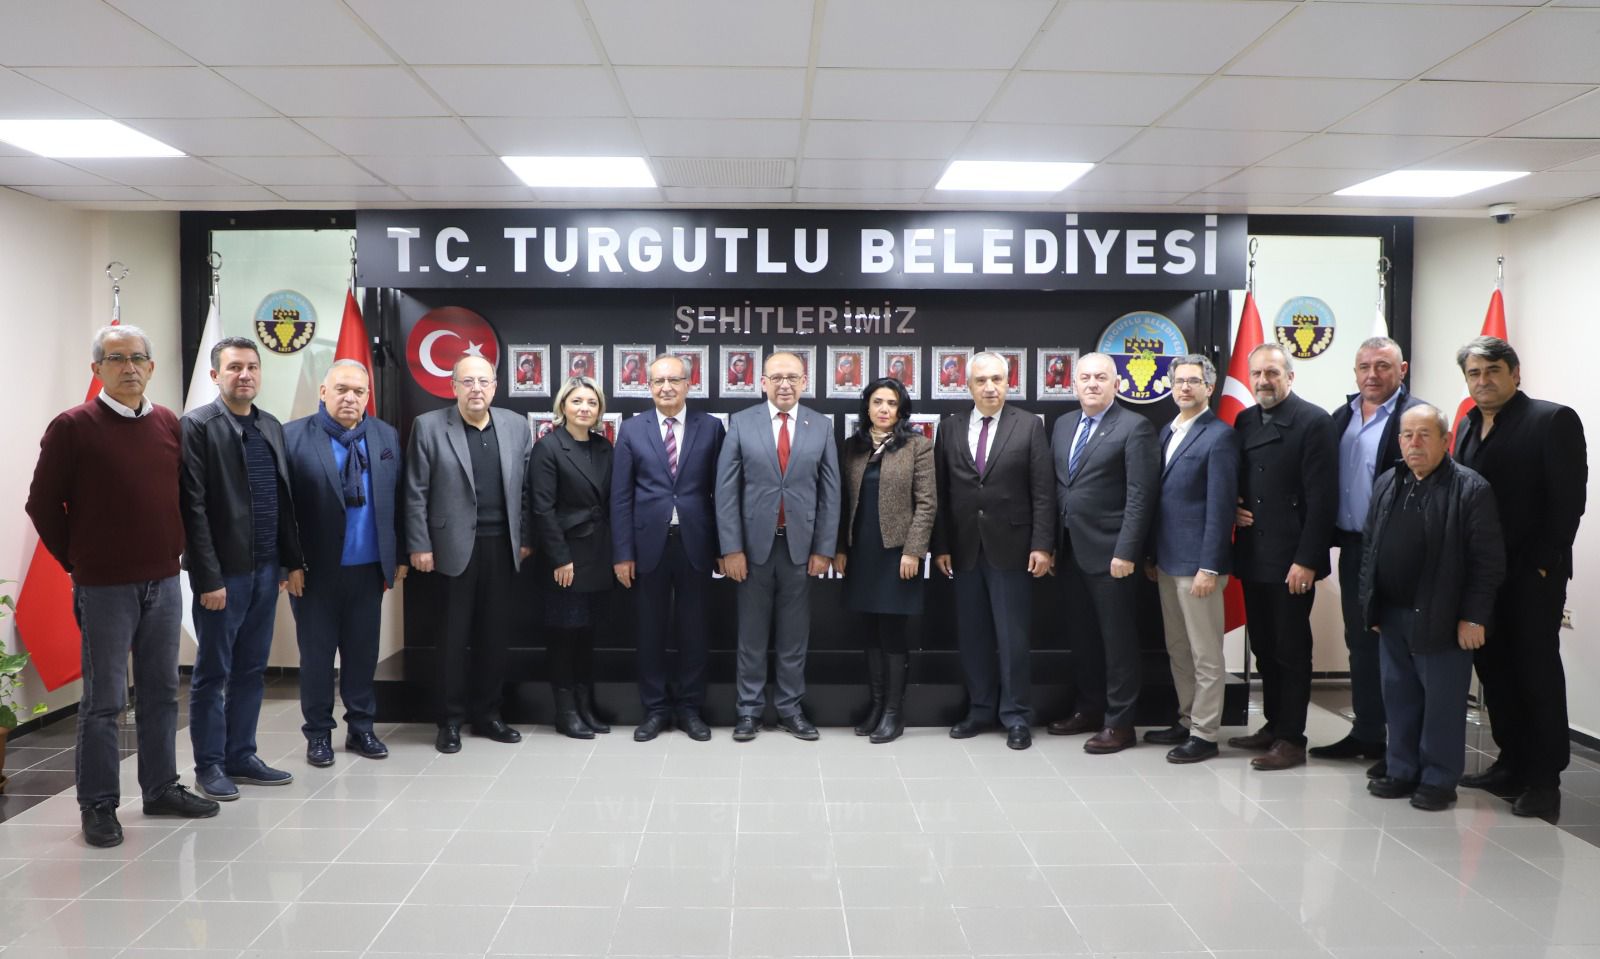 Turgutlu Organize Sanayi Bölgesi Olağanüstü Genel Kurul Sonrası İlk Müteşebbis Heyet Toplantısını Gerçekleştirdi